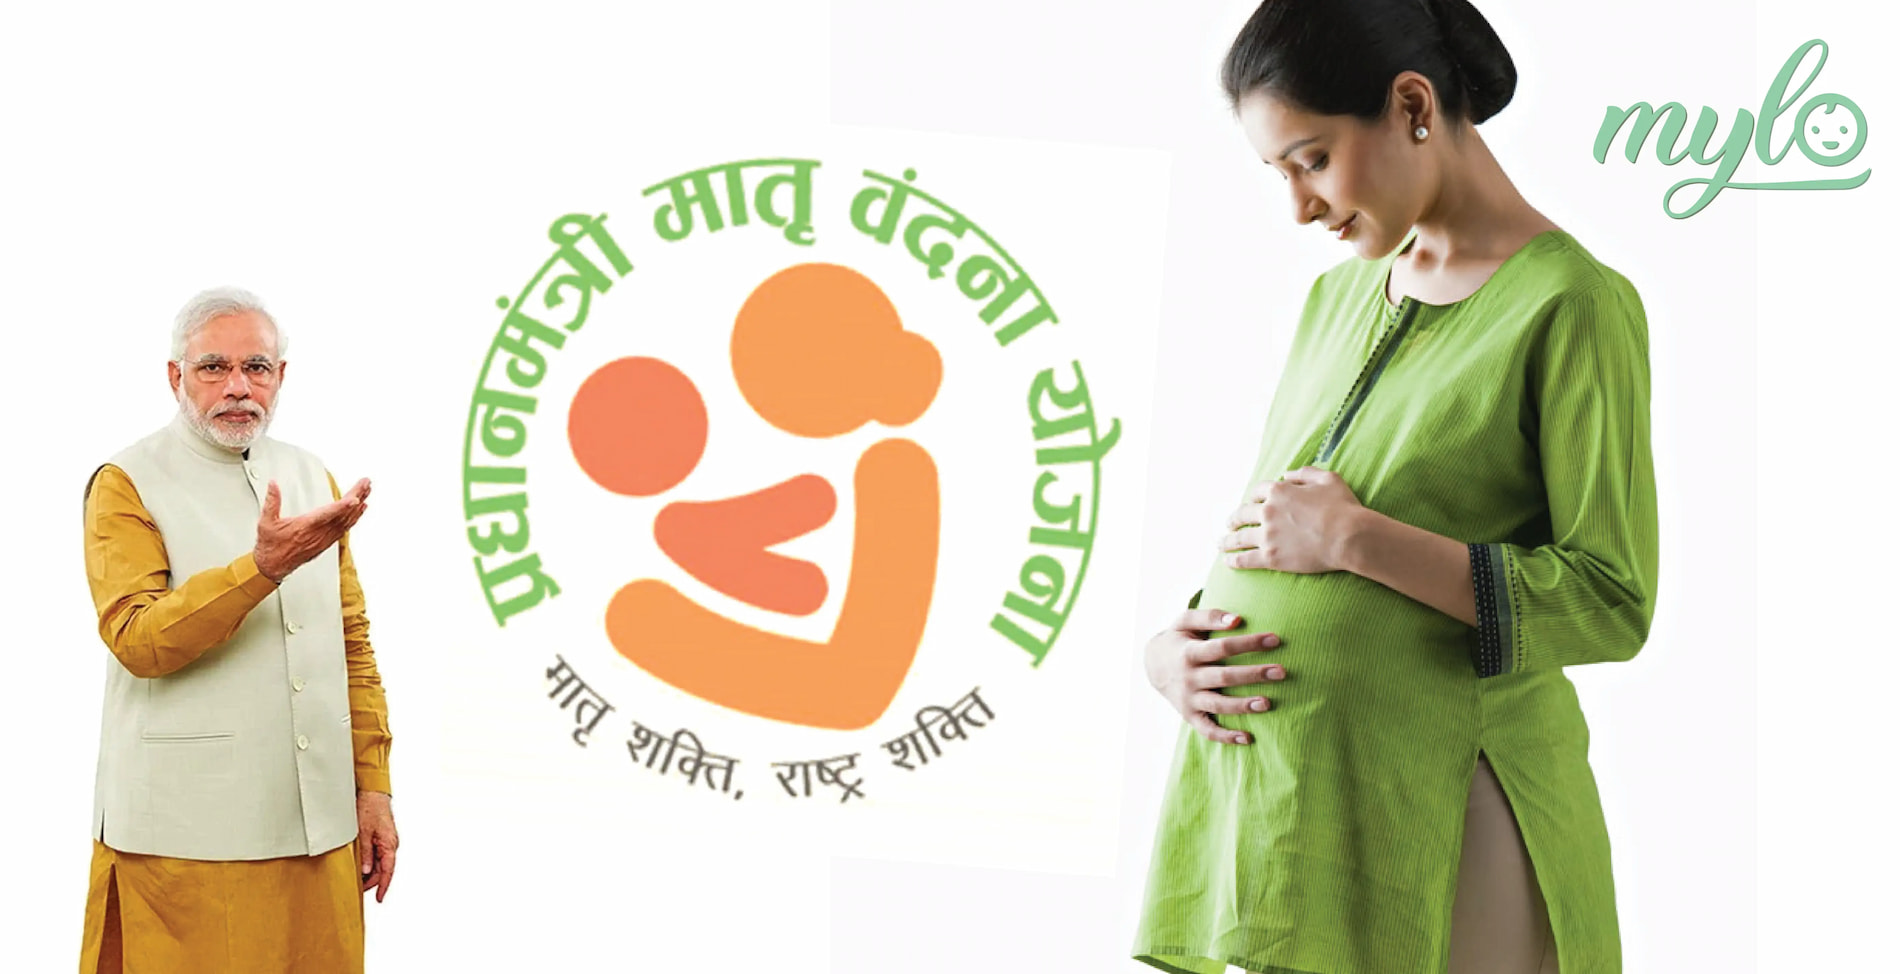 प्रधानमंत्री मातृ वंदना योजना (PMMVY) के तहत गर्भवती महिला को मिलेंगे 6000 रुपये, जानिए इस योजना के लिए कैसे आवेदन करें?